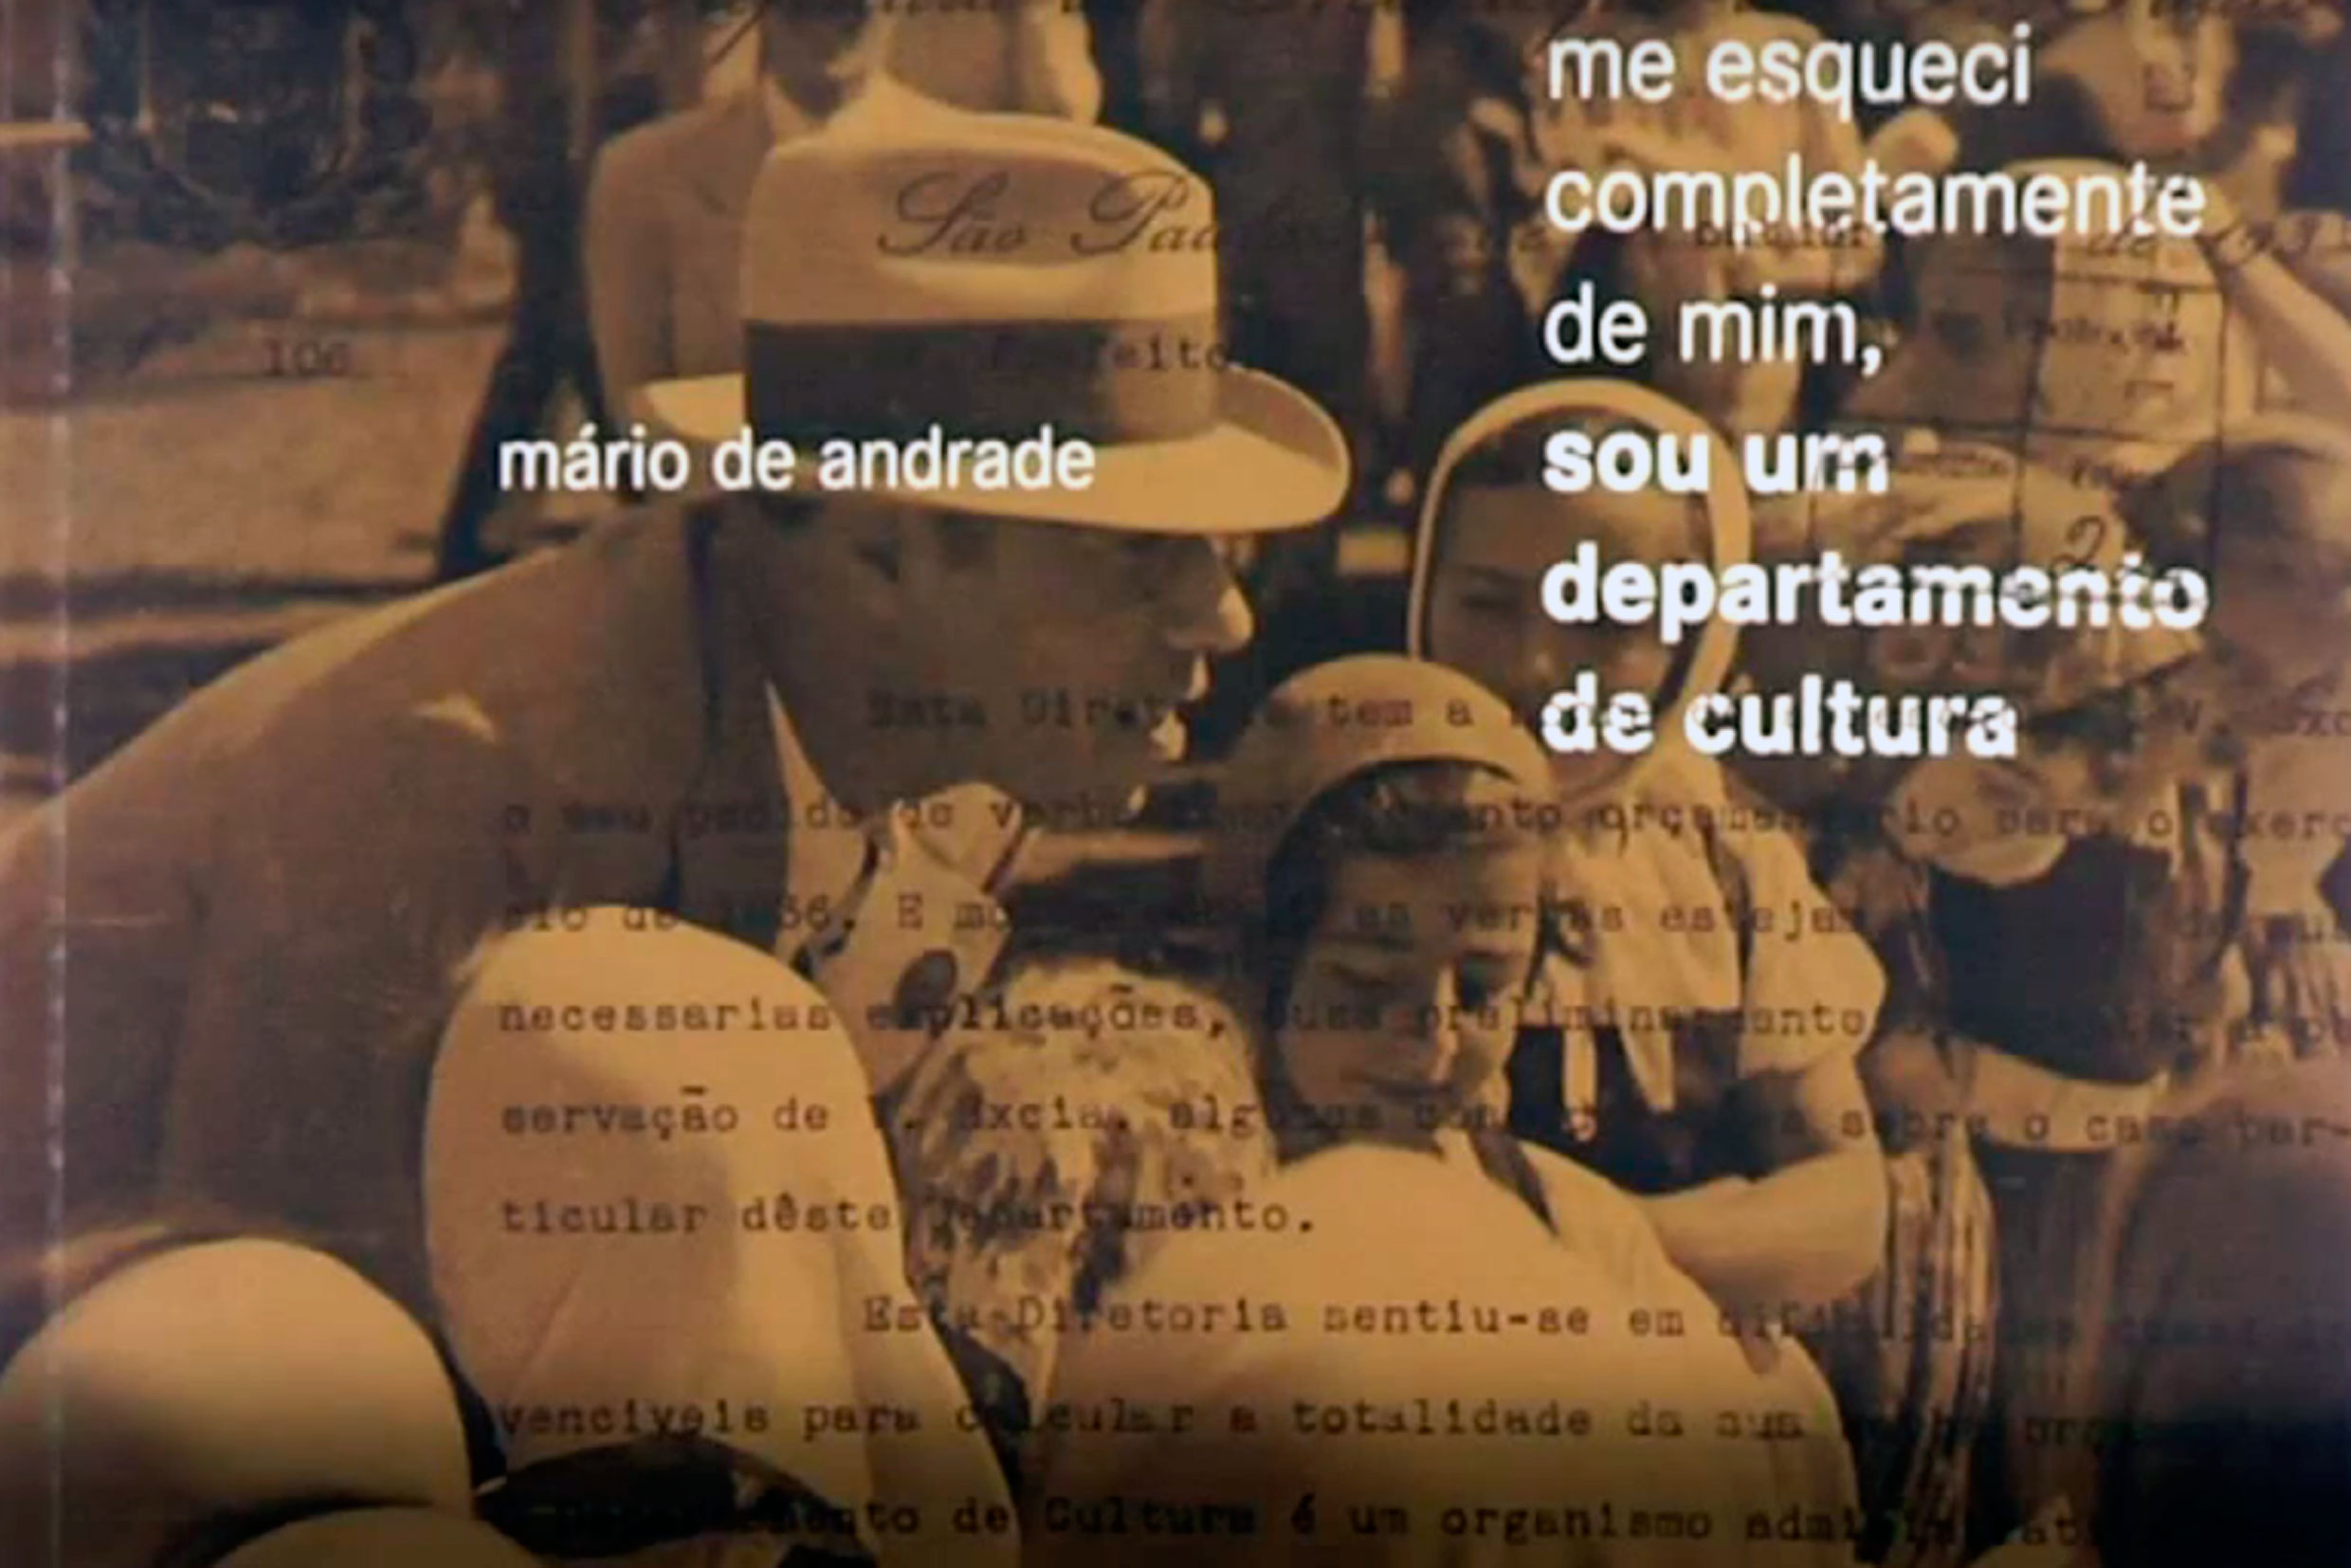 Mário de Andrade: Me esqueci completamente de mim, sou um departamento de cultura